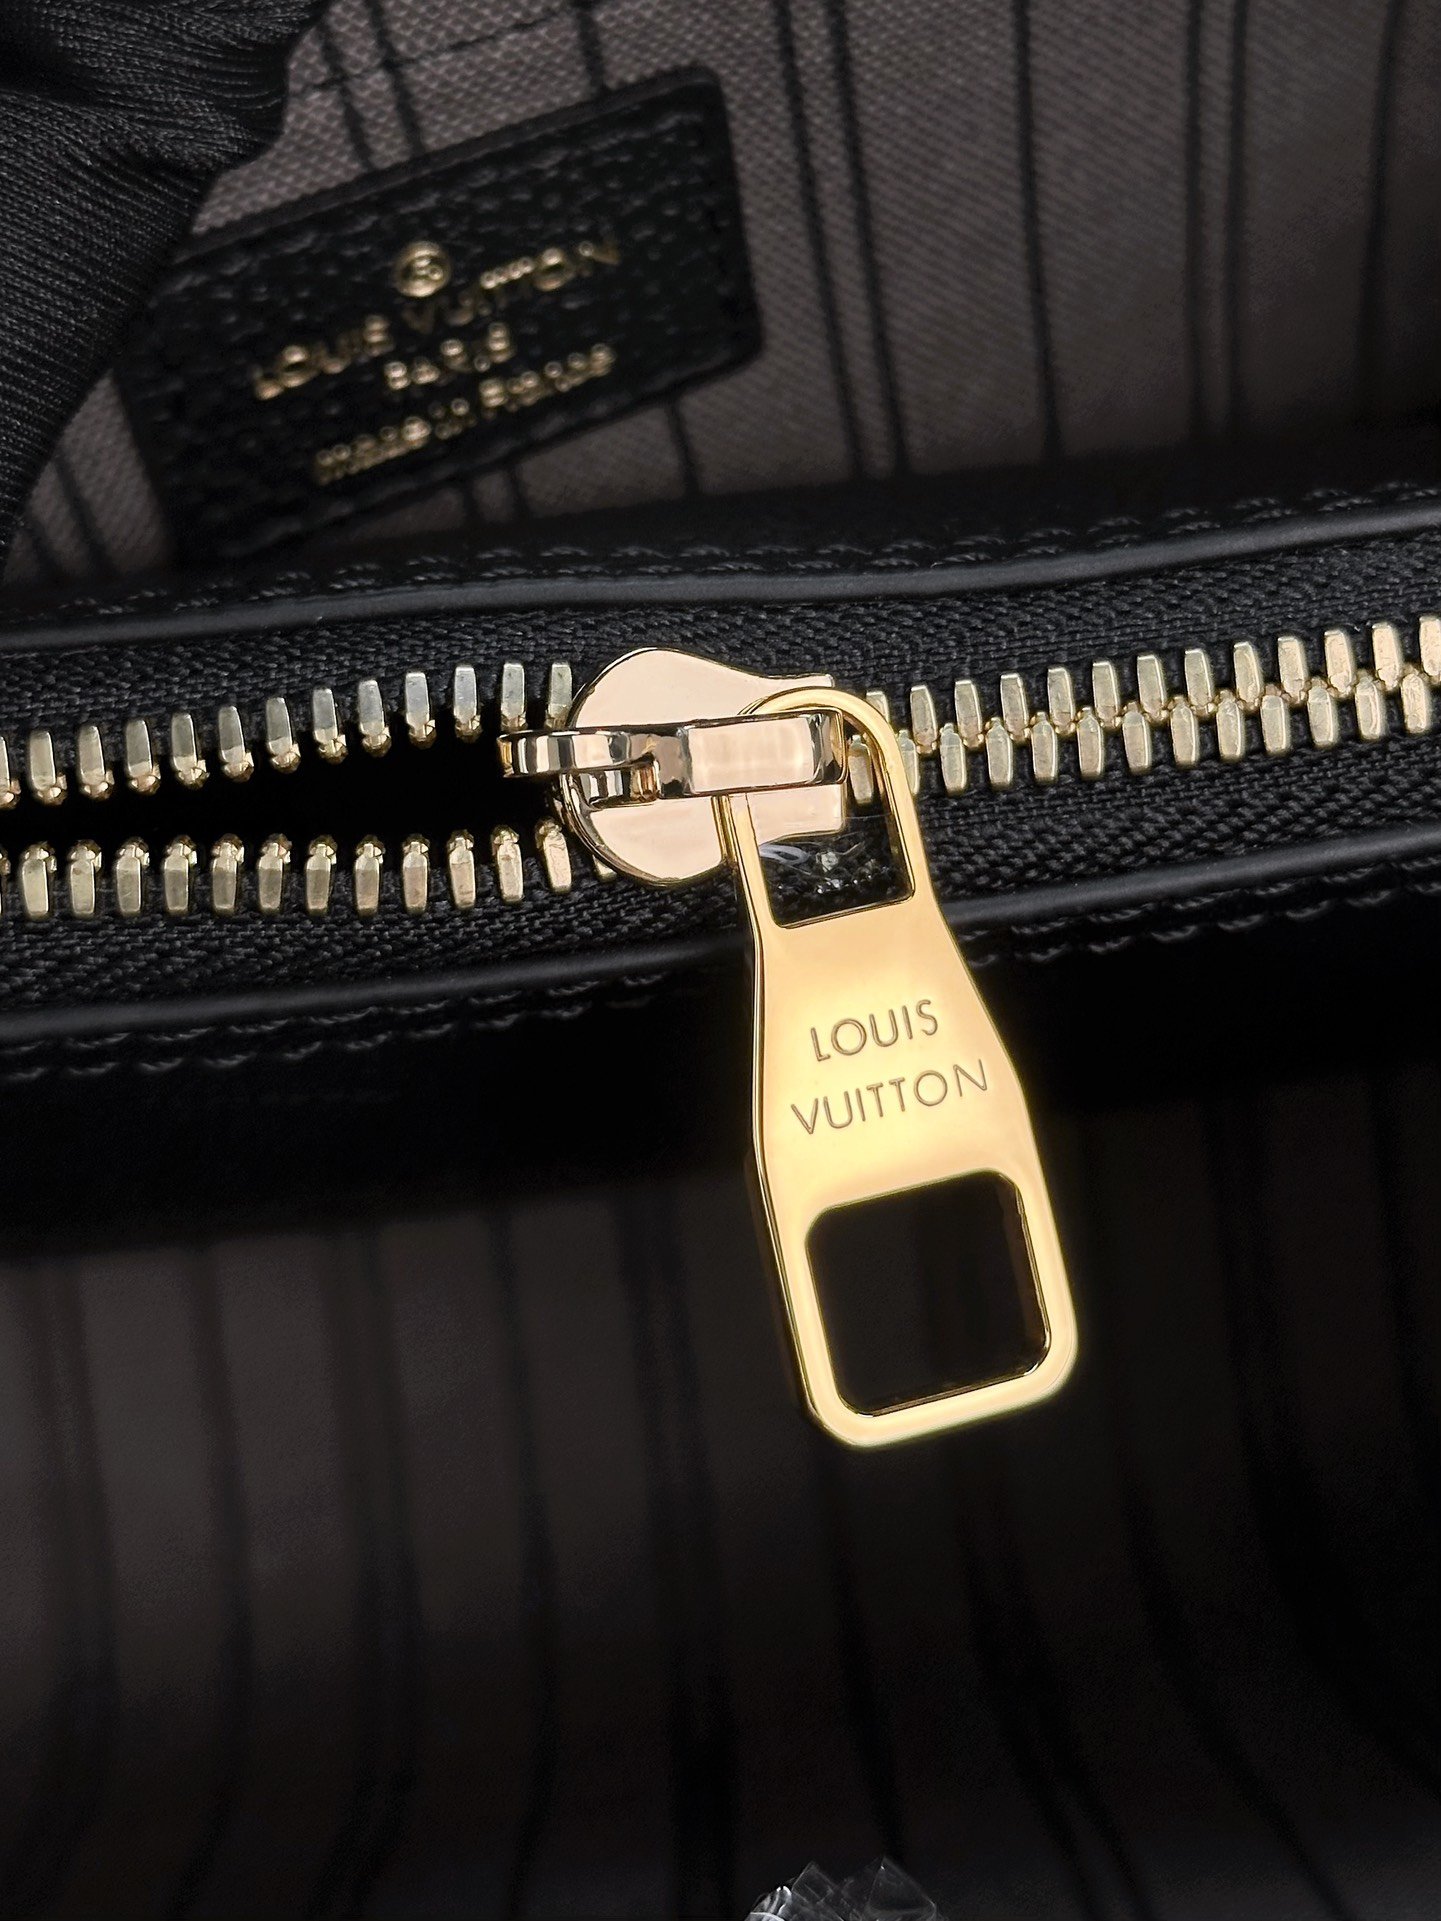 顶级原单M41053黑色小巧精致的迷你款Montaigne手袋拥有多种携带方式是商务女士的理想便携包款其